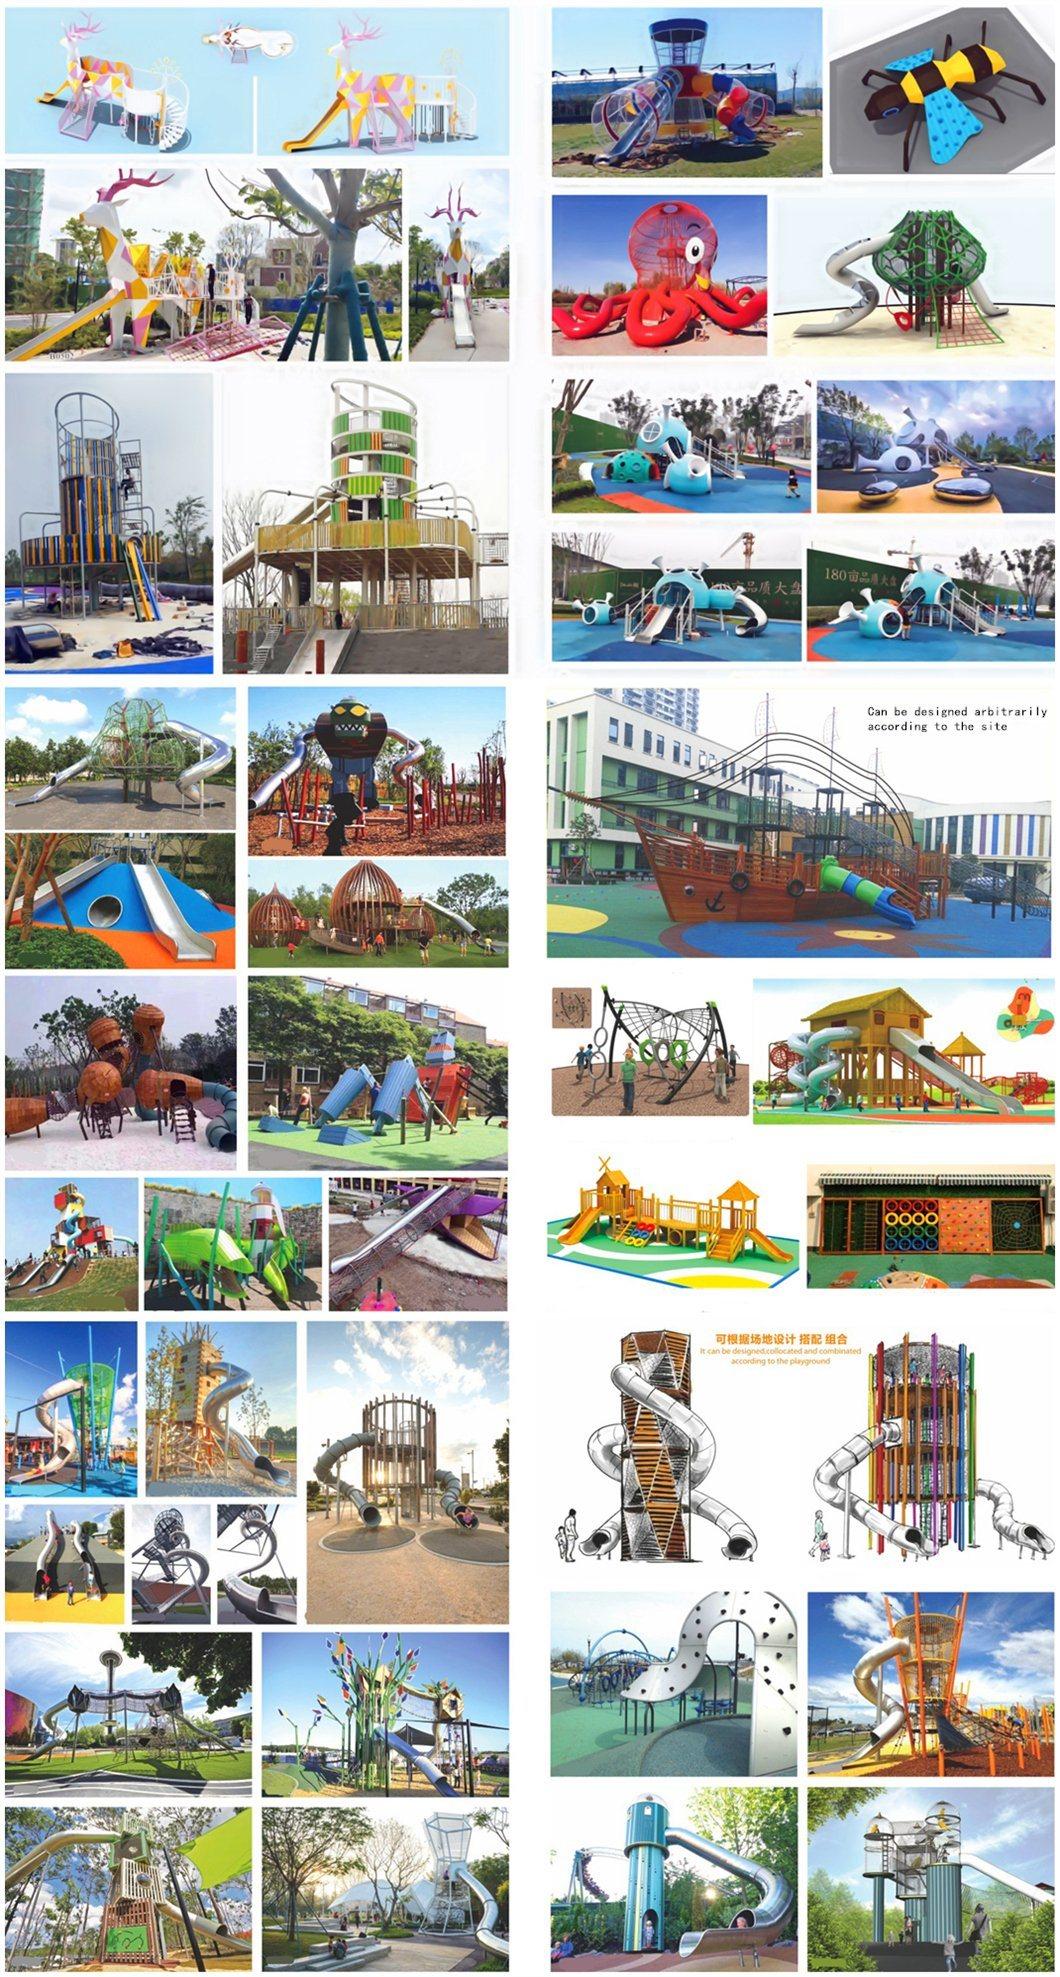 Park Kids Outdoor Playground Equipment Farm Village Wooden Slide Climbing